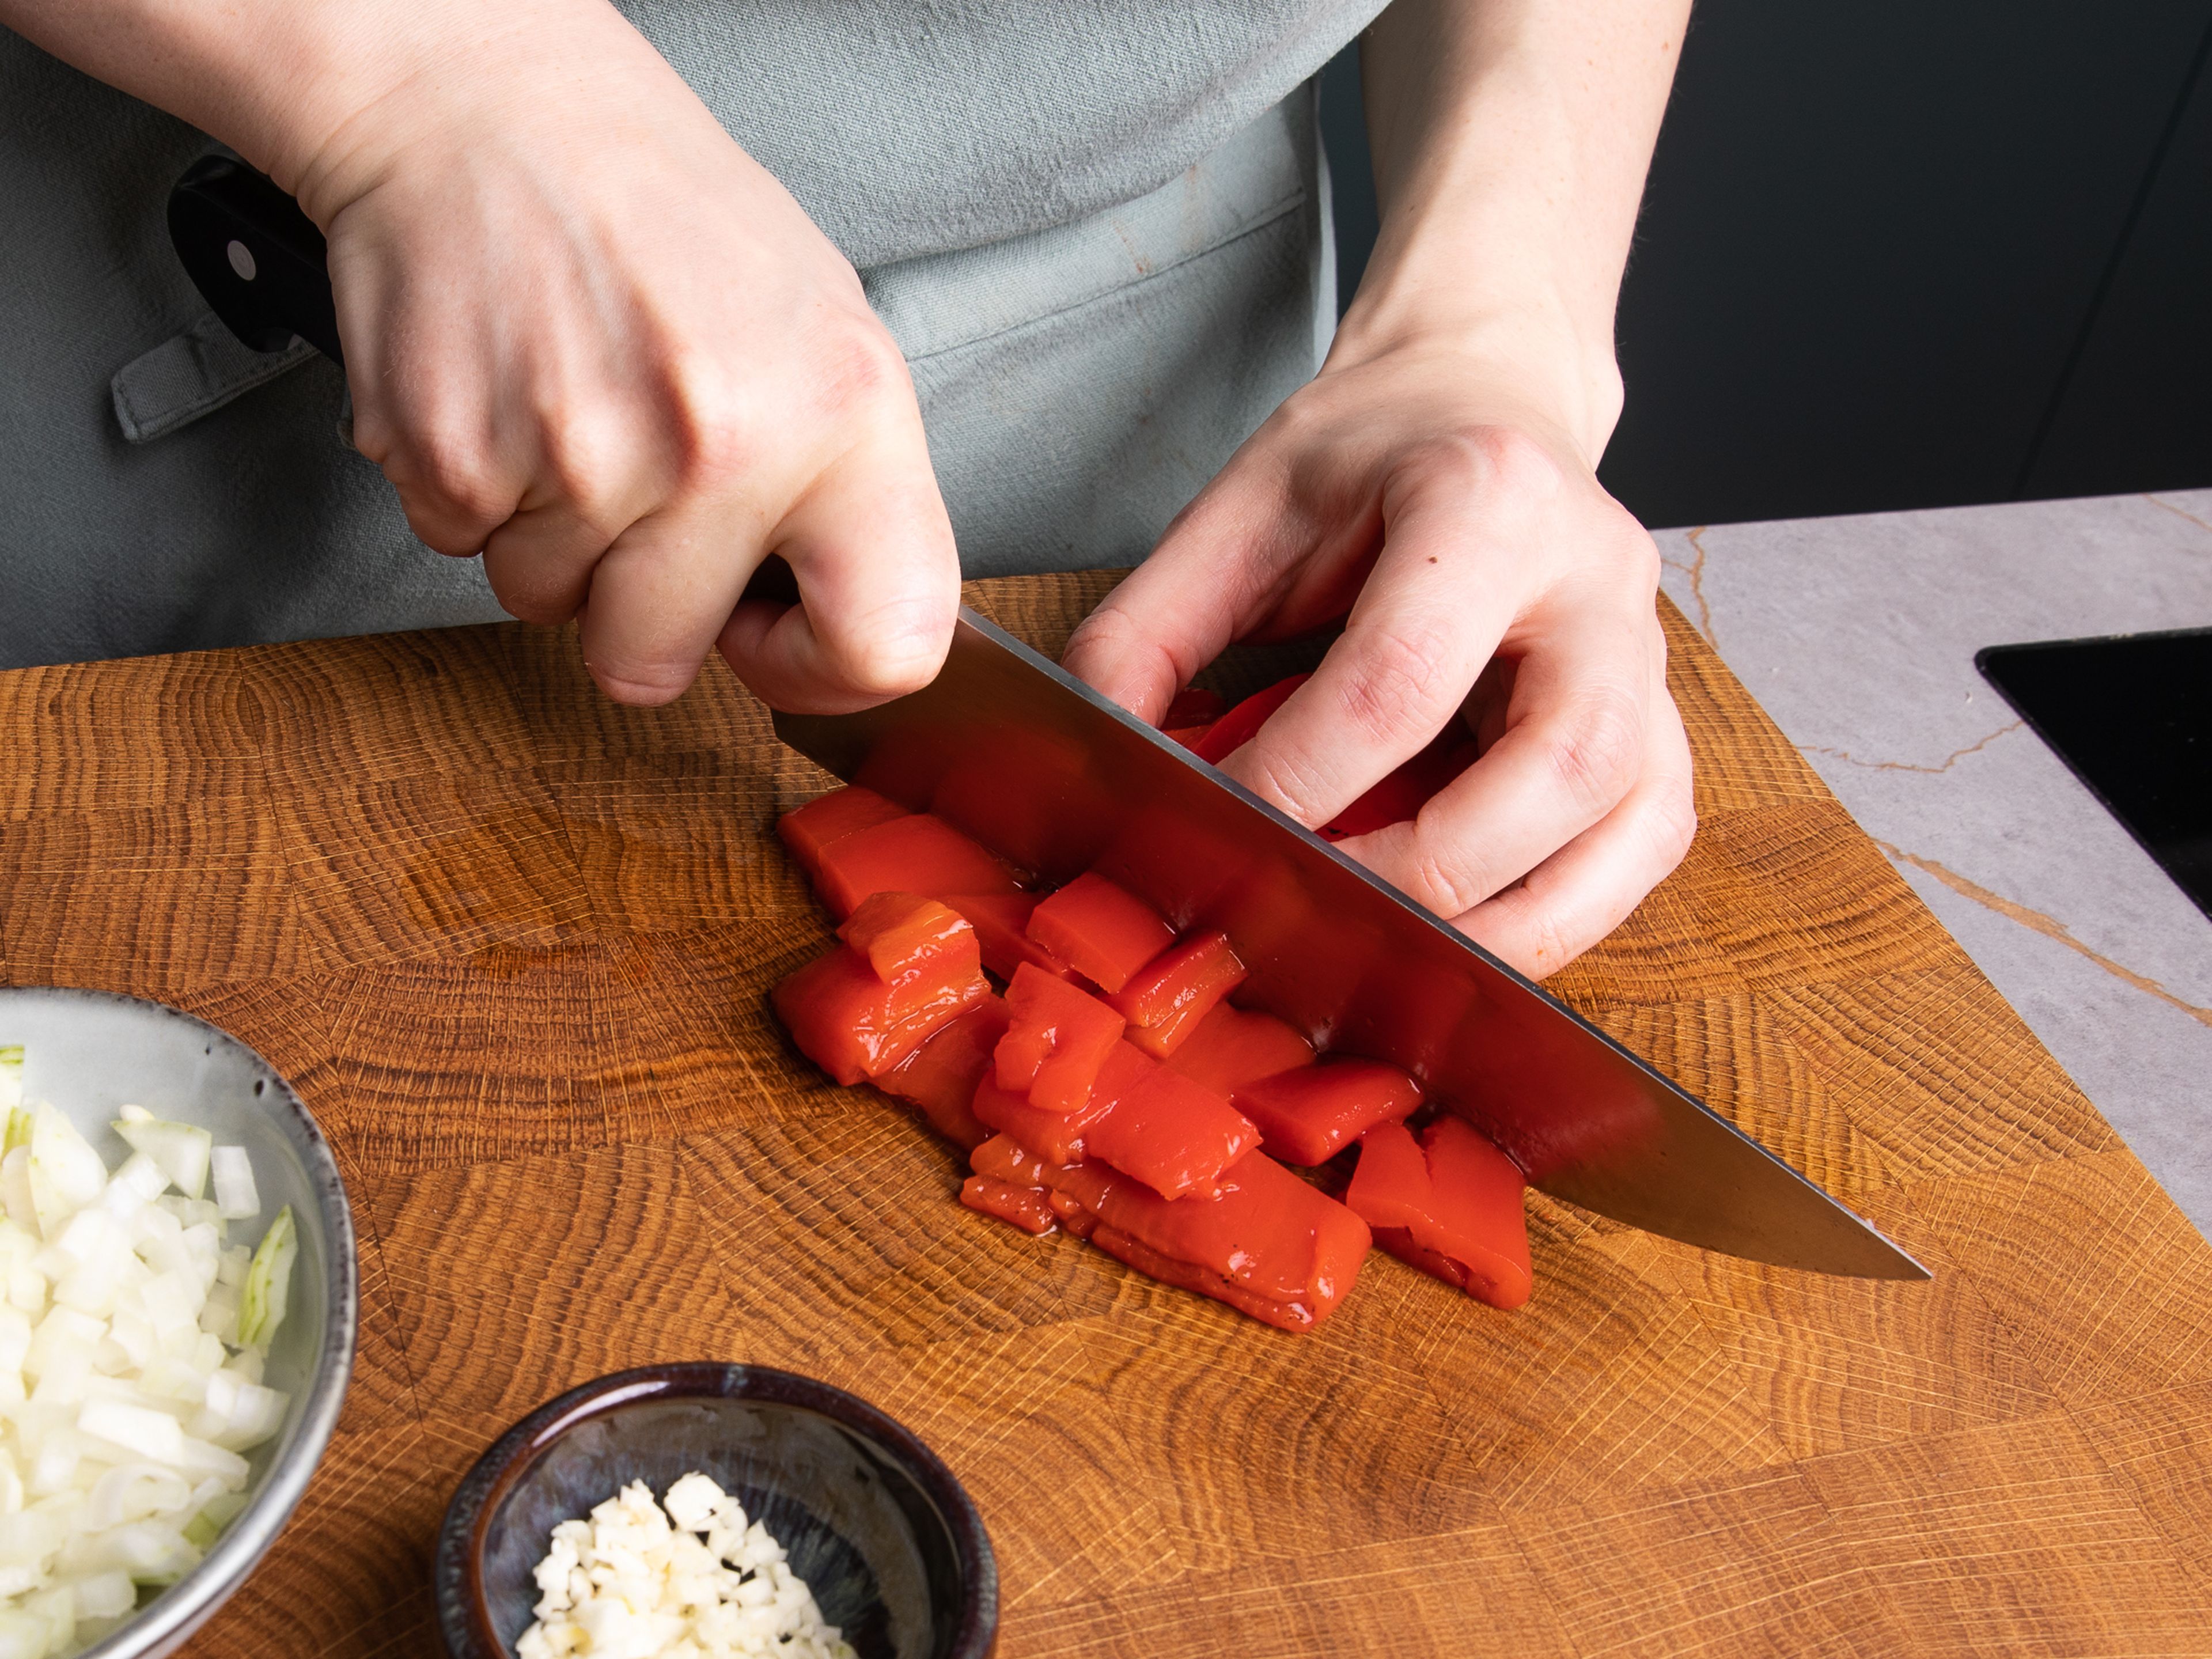 Geröstete Paprika abtropfen lassen und in mundgerechte Stücke schneiden. Zwiebel würfeln und Knoblauch hacken. Bohnen aus der Dose durch ein Sieb gießen, abspülen und abtropfen lassen.